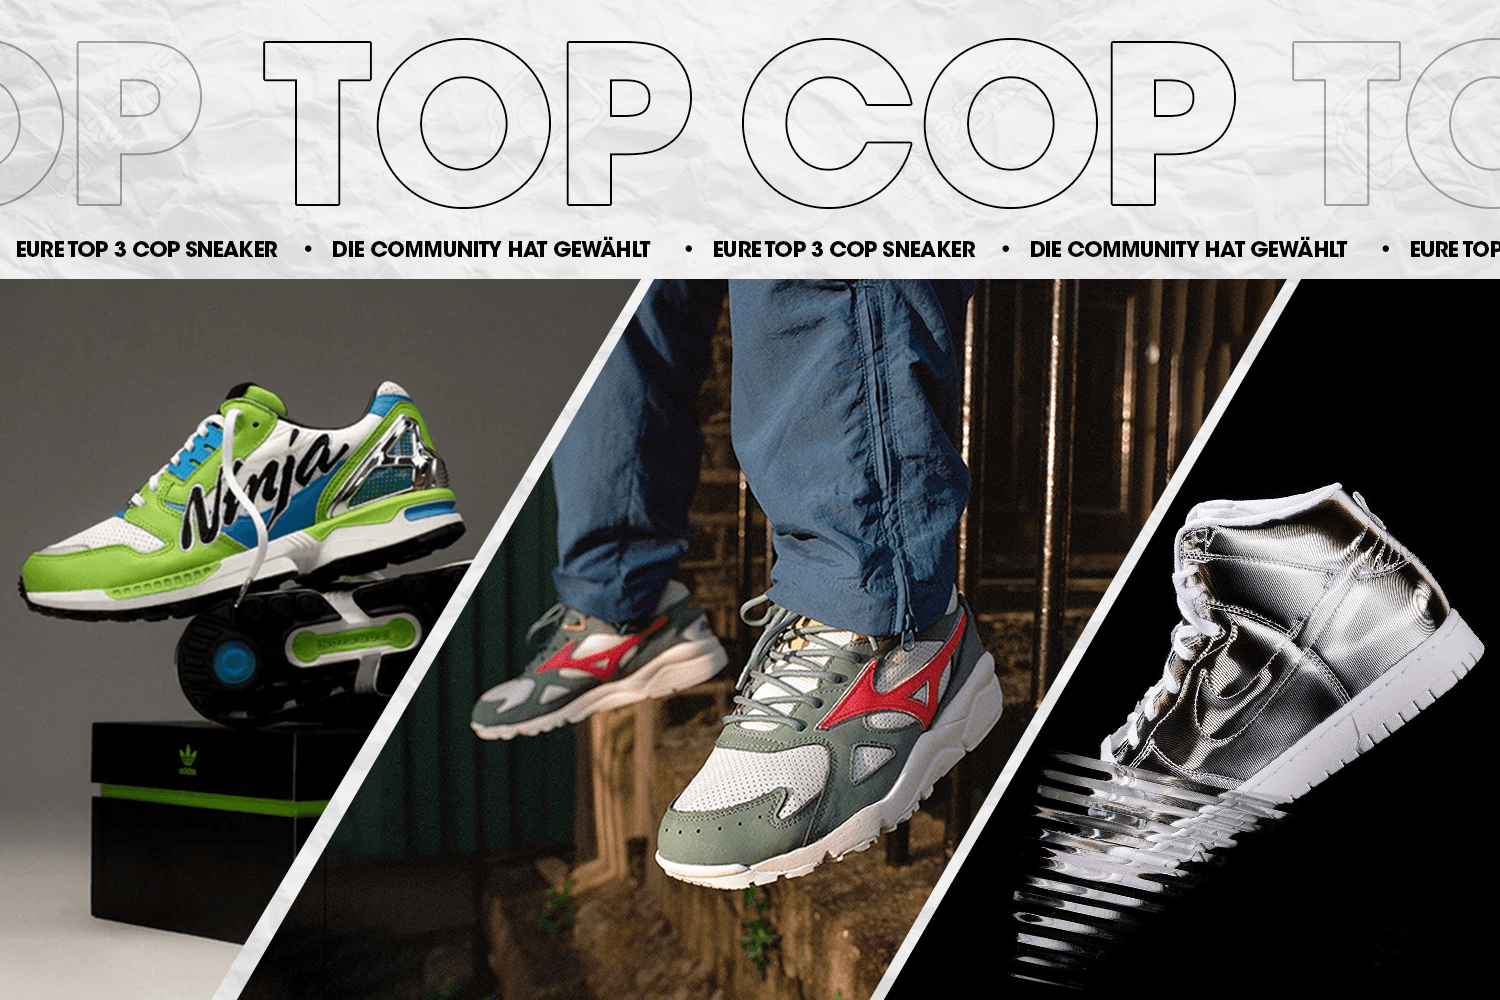 Die Community hat gewählt: Eure Top 3 Cop Sneaker Woche 15